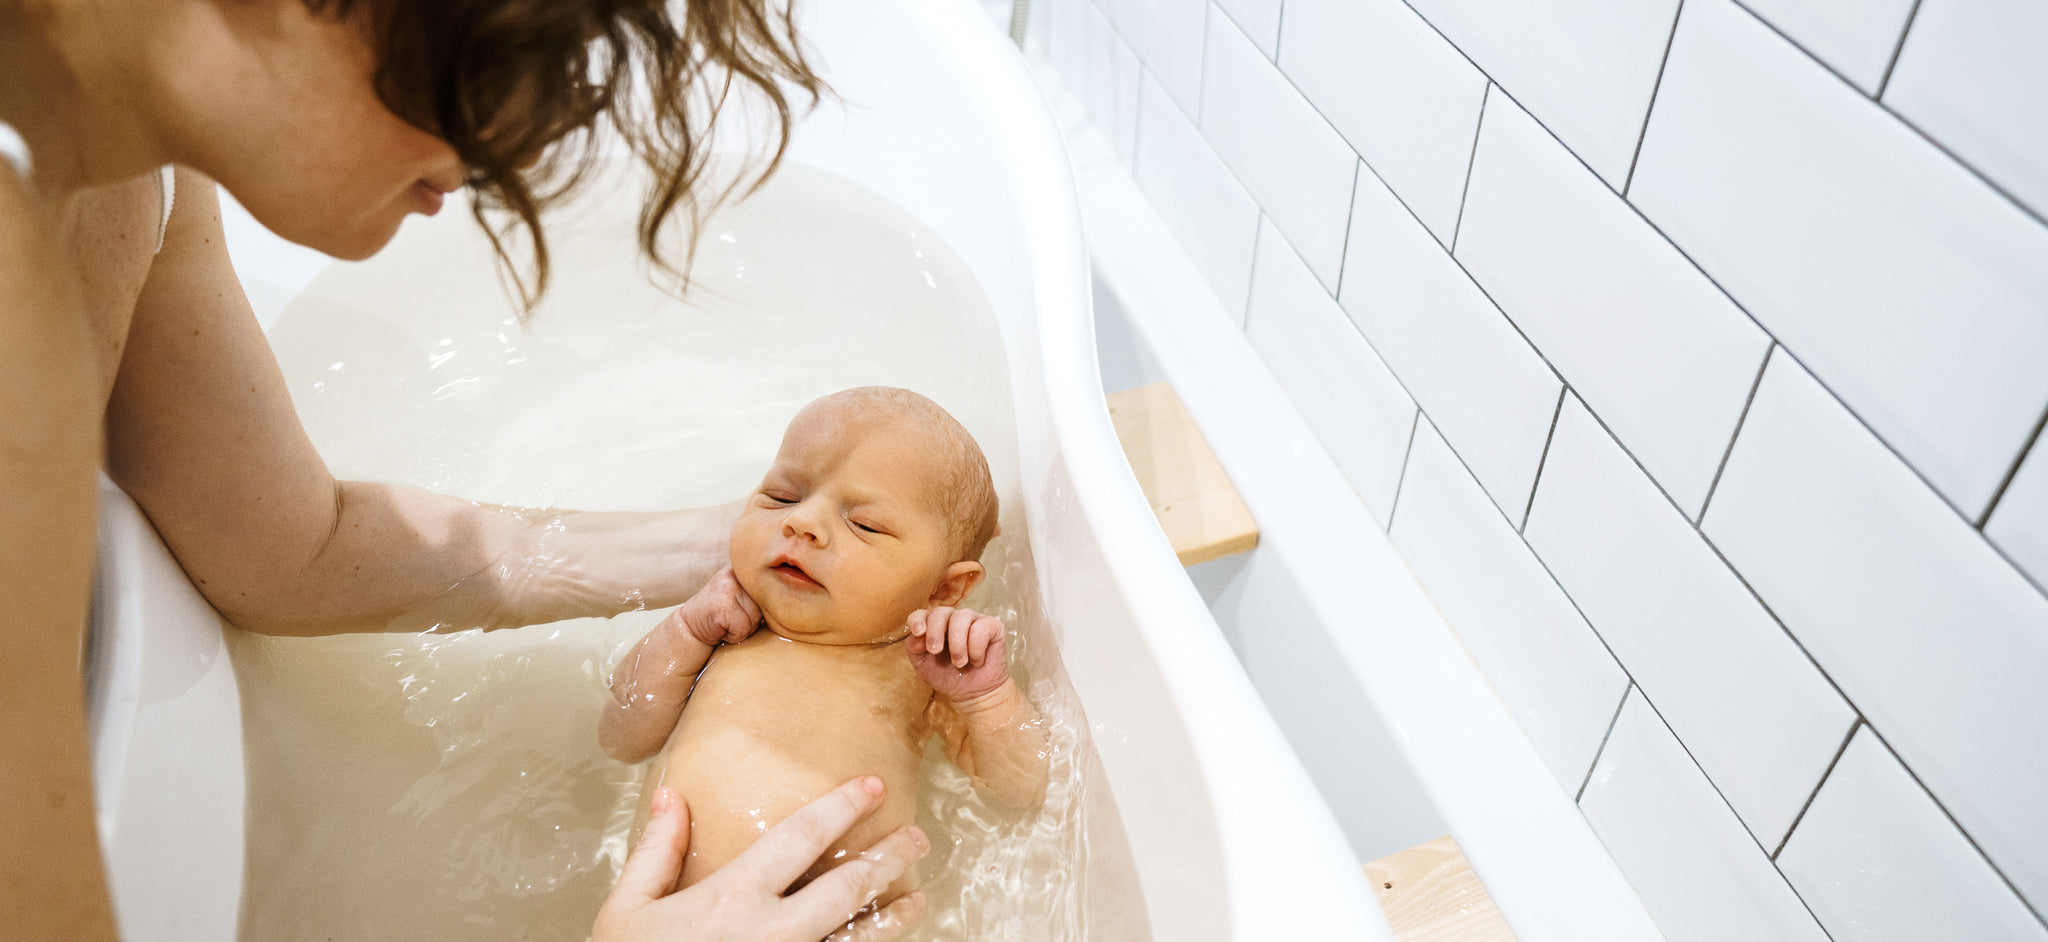 Купание малыша с мамой в ванне. Мама купает ребенка в ванной. Дети моются в ванной. Мать в ванне. Купание мамы с малышом в ванной.